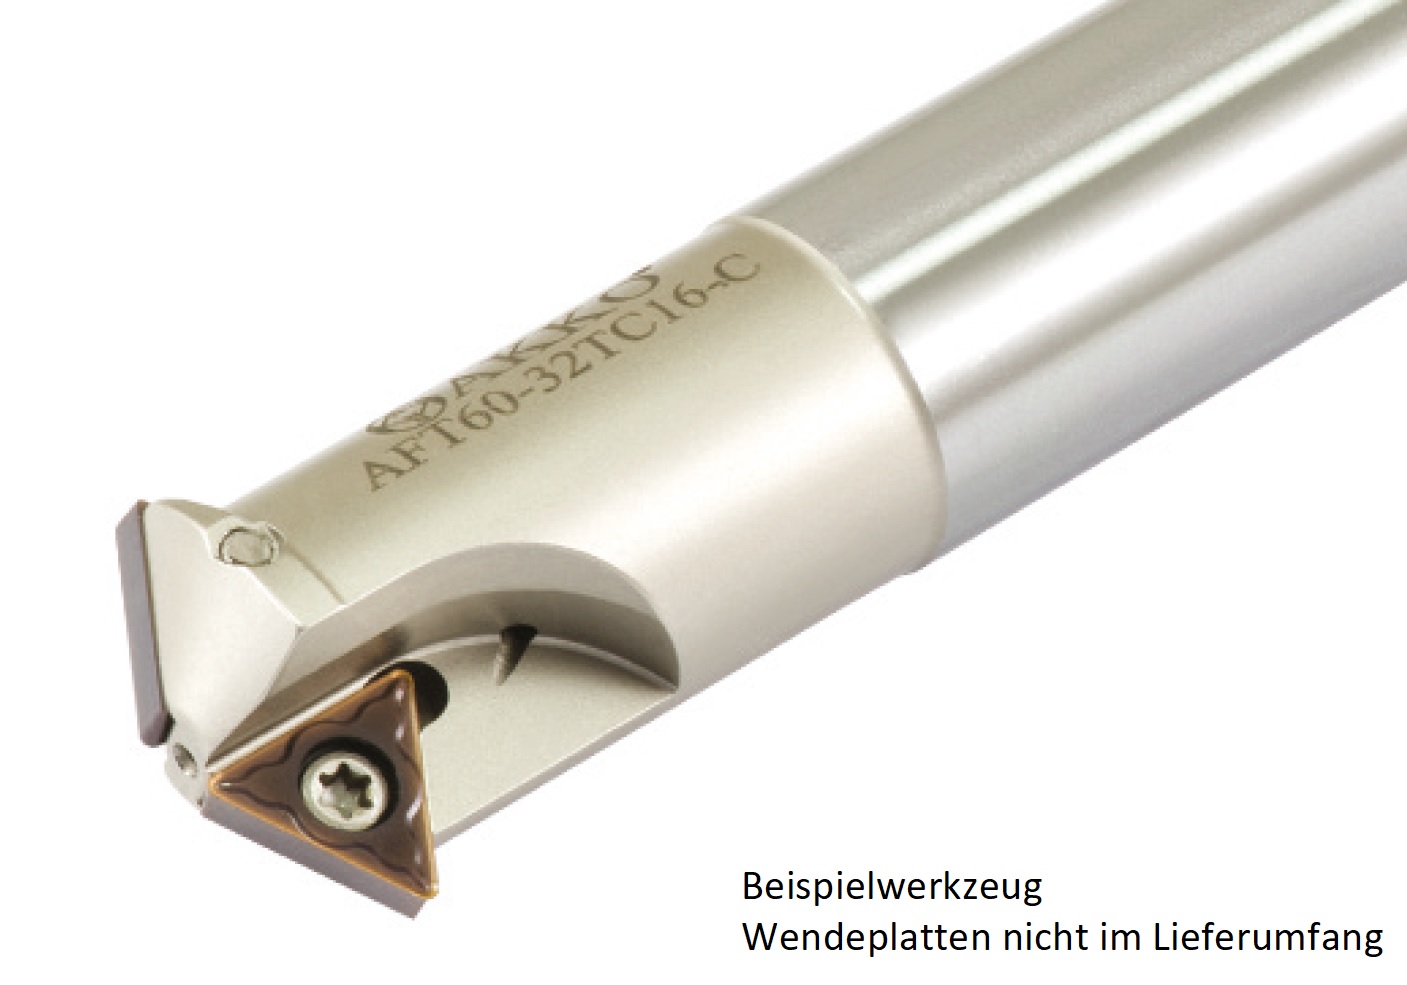 AKKO-Gewindefräser ø 40 mm, kompatibel mit ISO-Gewinde-Fräsplatte TC.T 16T304, Gesamtlänge = 250, mit Innenkühlung
